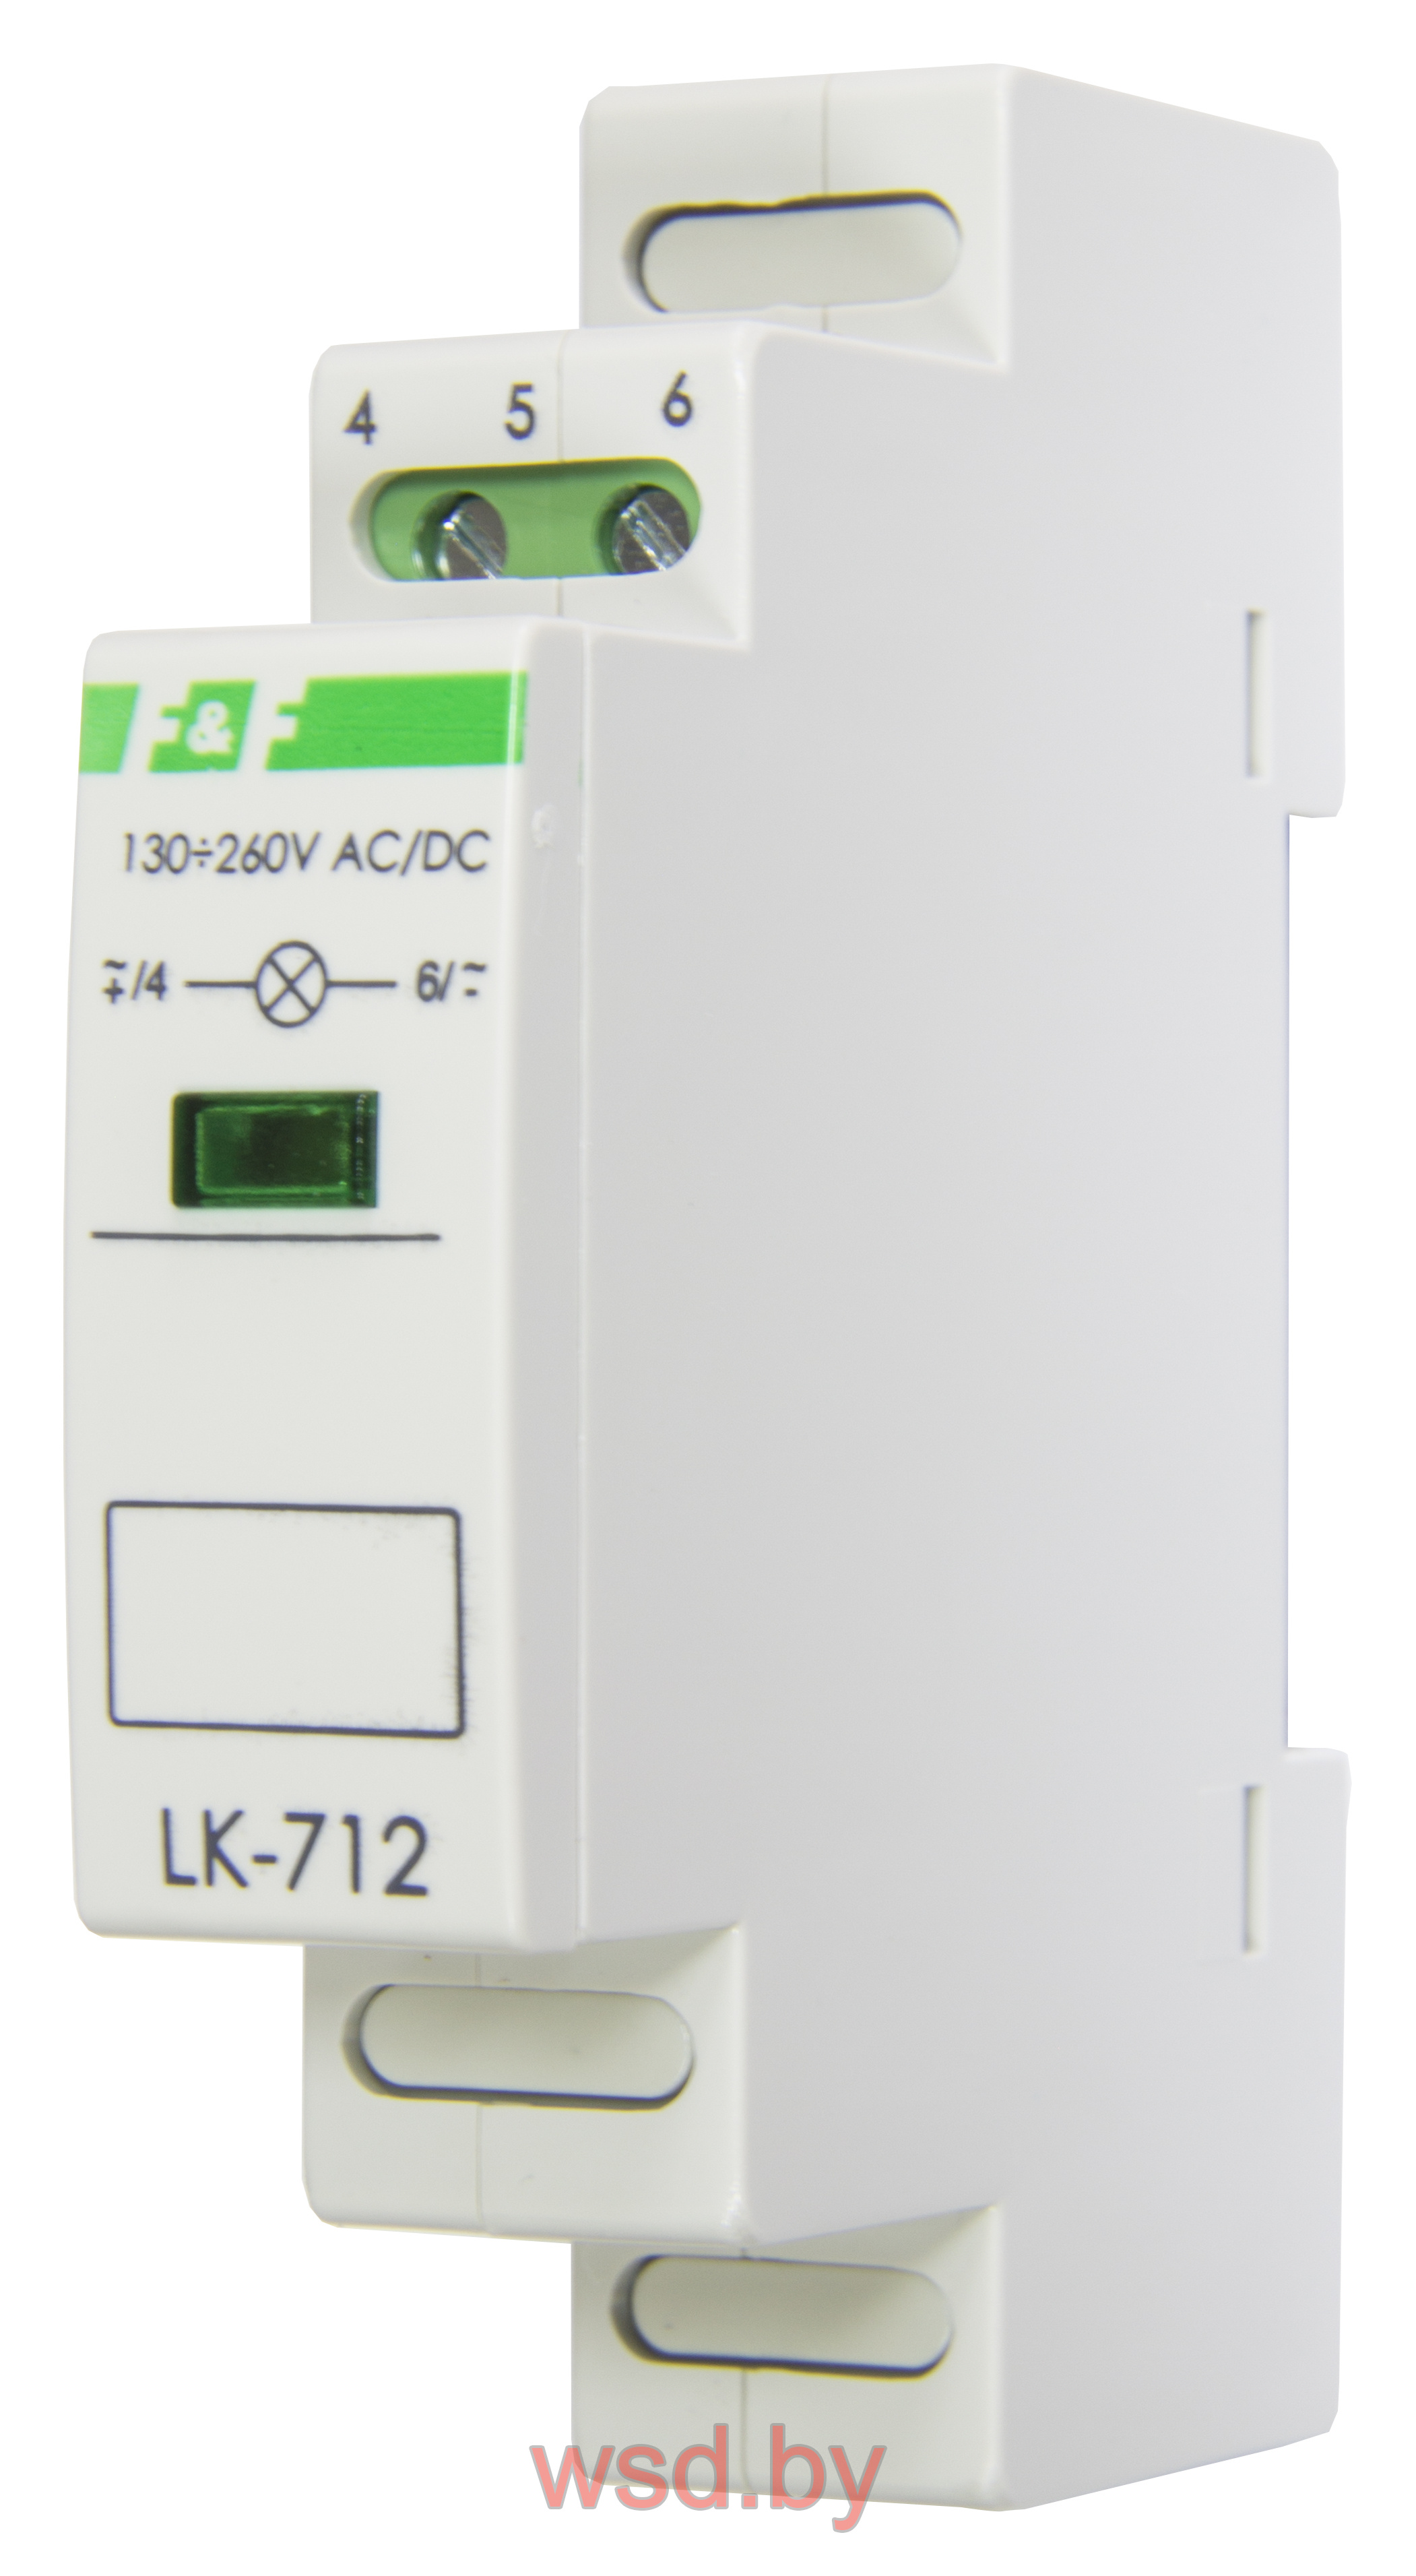 Указатель напряжения LK-712-G-2 сигнализация наличия одной фазы, цвет ЗЕЛЁНЫЙ, 1 модуль, монтаж на DIN-рейке 10-30 В AC/DC IP20. Фото N2